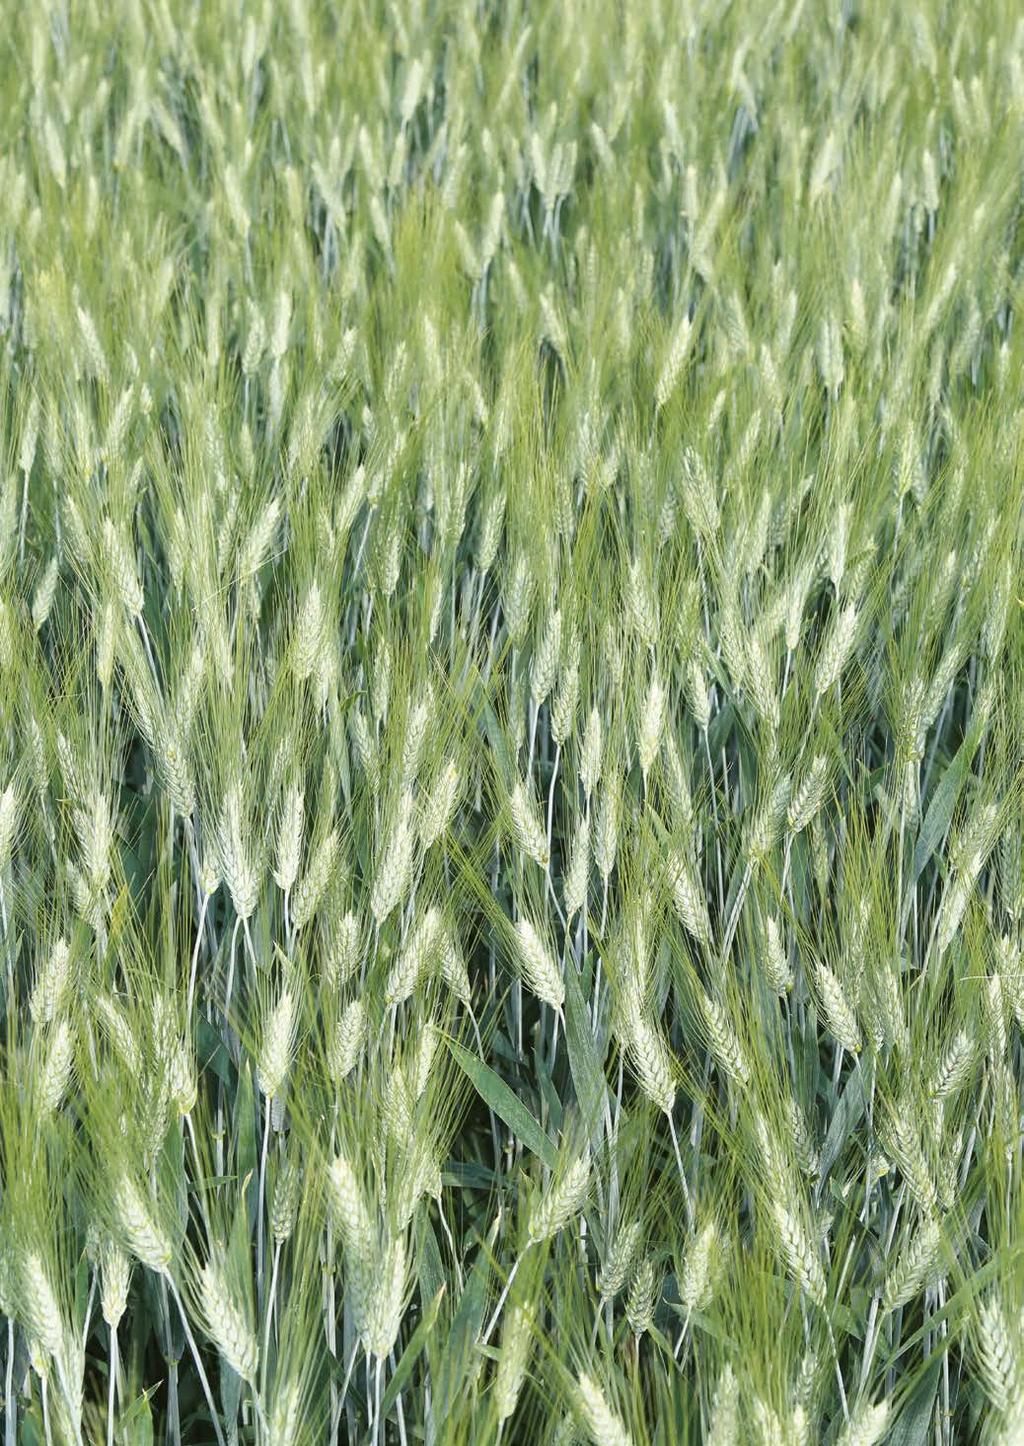 TOVÁBBI TAVASZI FAJTÁK *** A vetésterület szempontjából a tavaszi vetésű gabonafélék nem tartoznak a legnagyobbak közé, de a saatbau linz ezen a területen is számos fajtával rendelkezik.